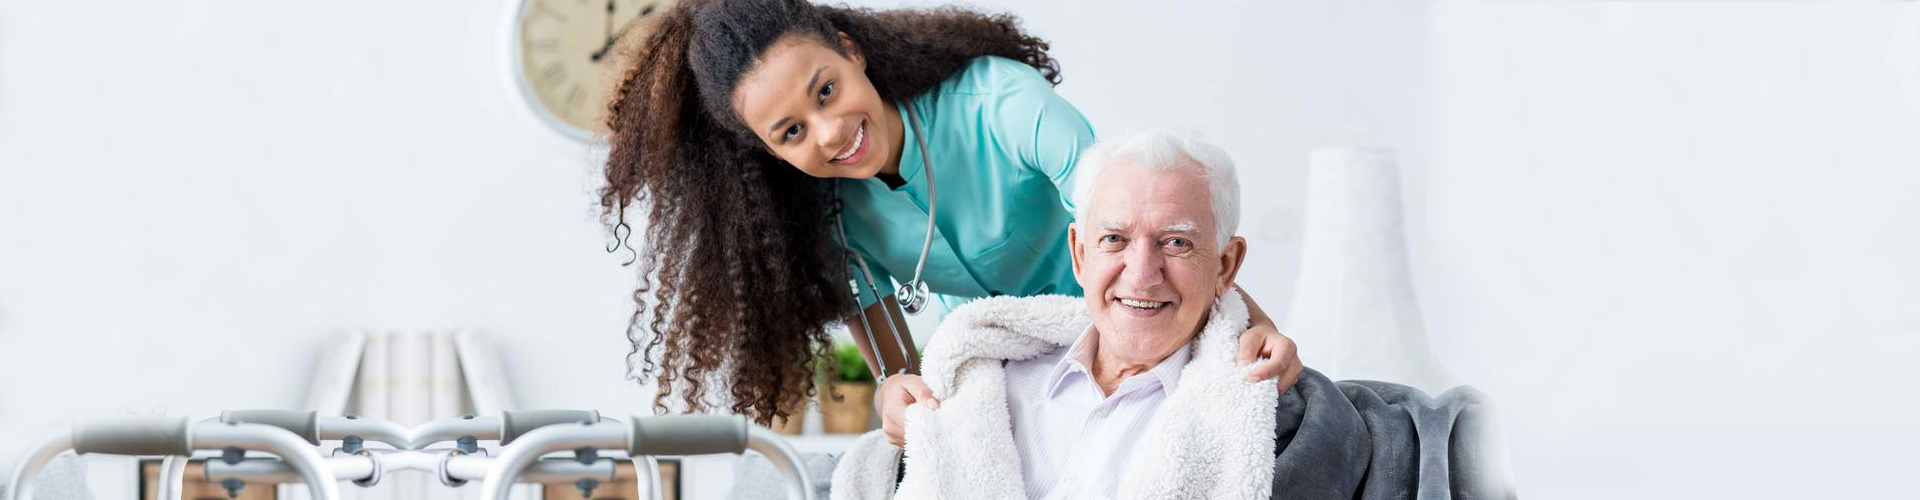 a caregiver and a senior man smiling